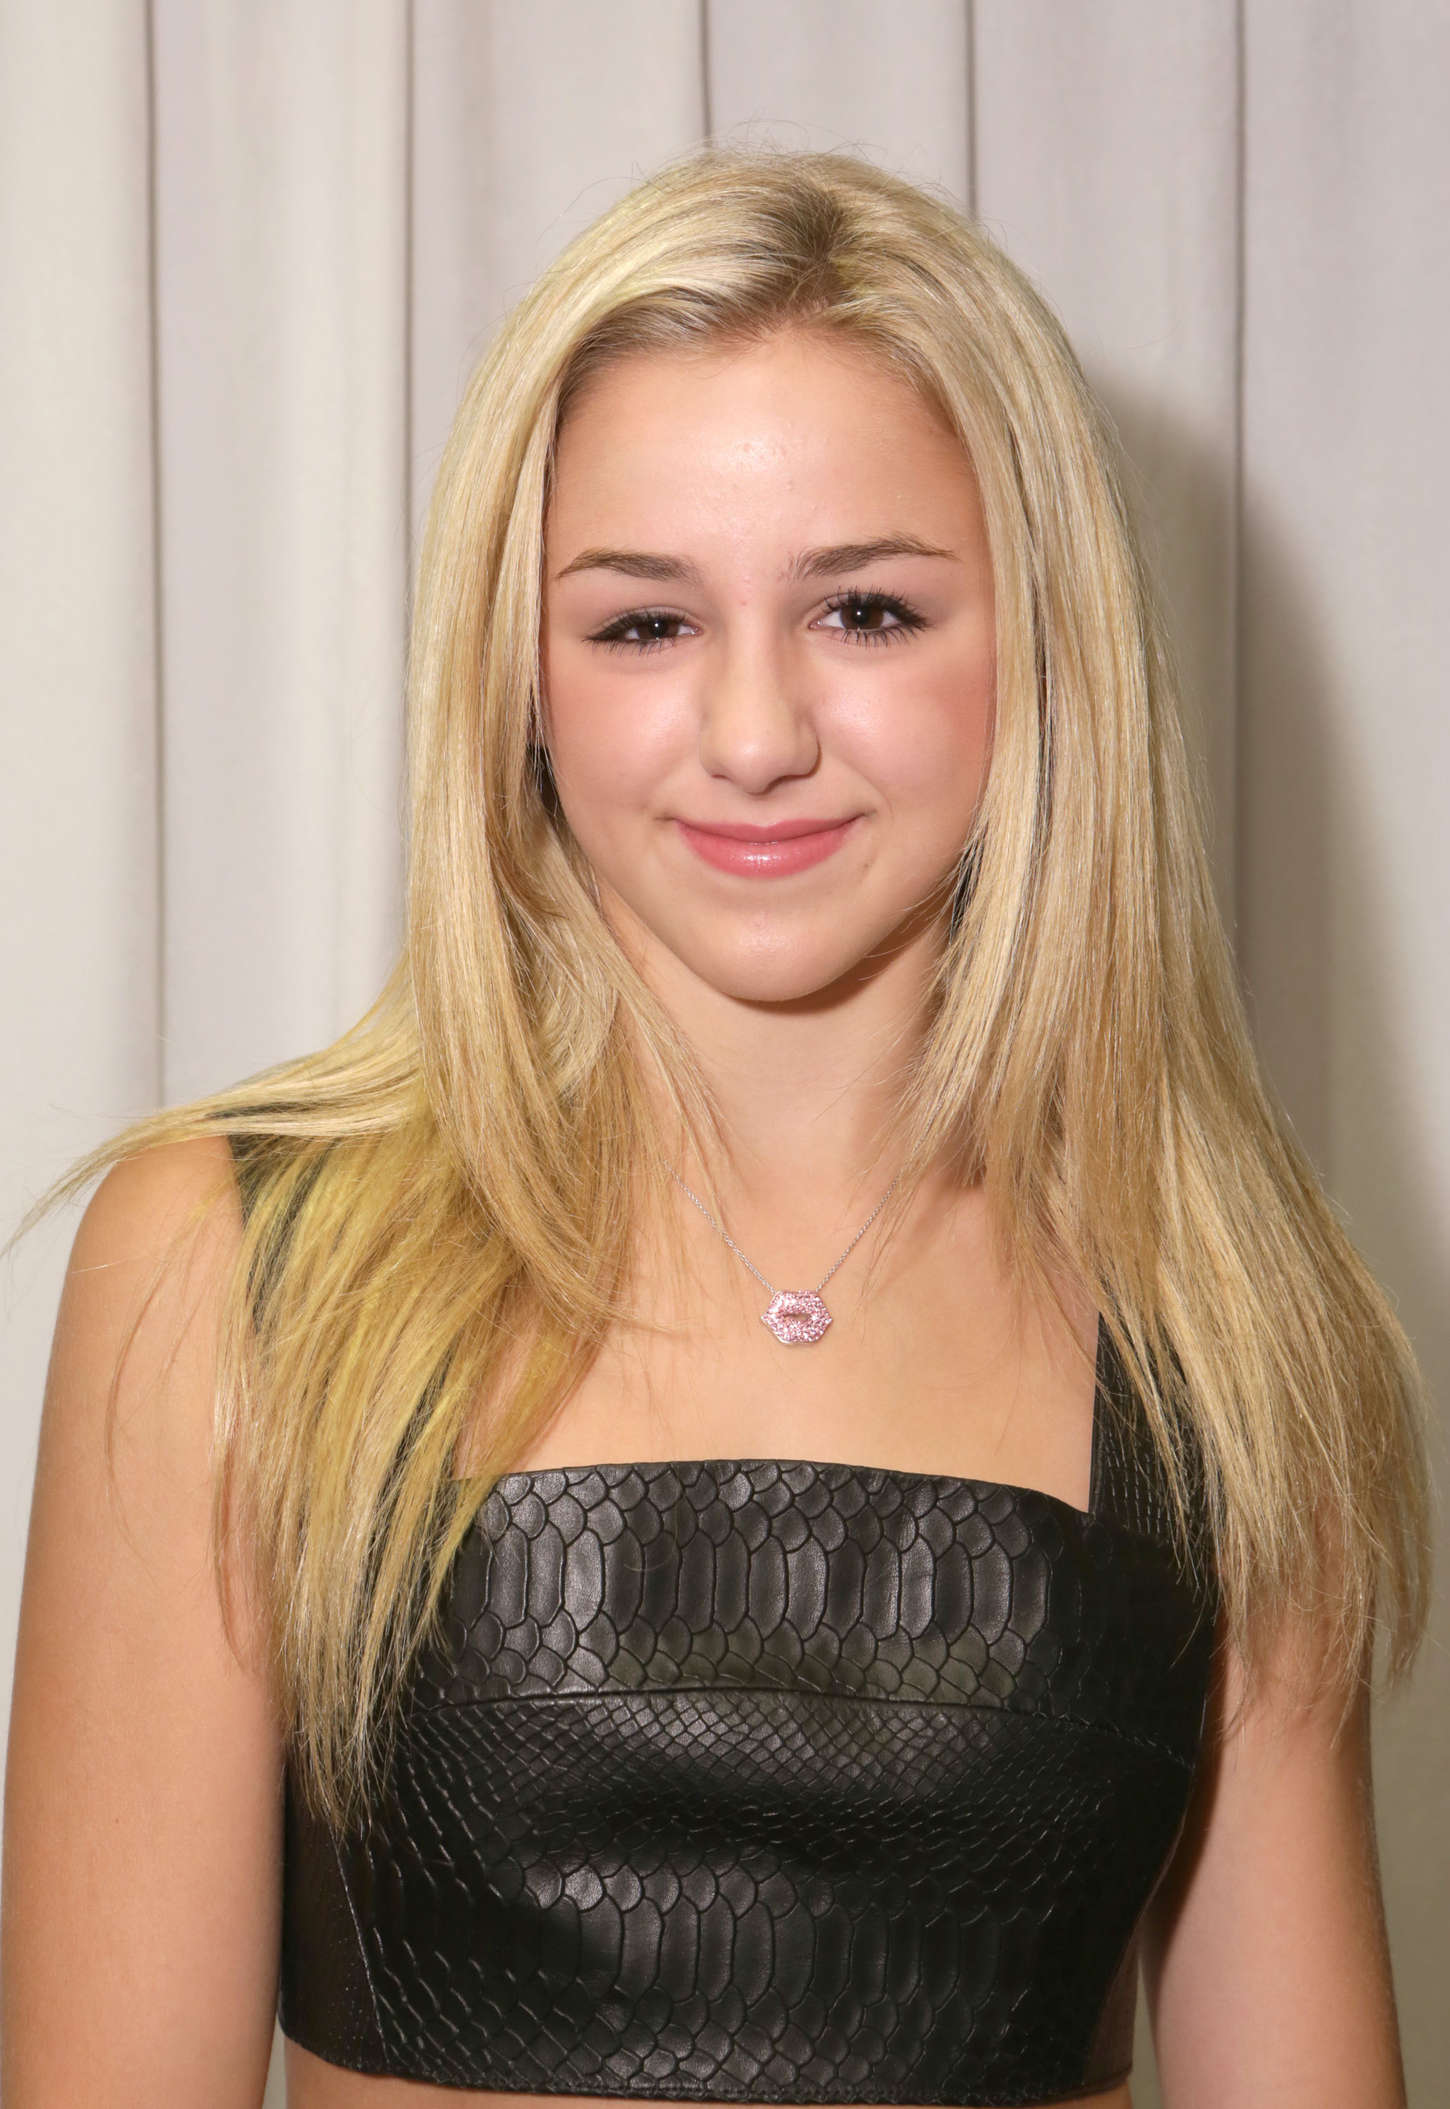 Chloe Lukasiak attends 2015 Teen Choice Awards